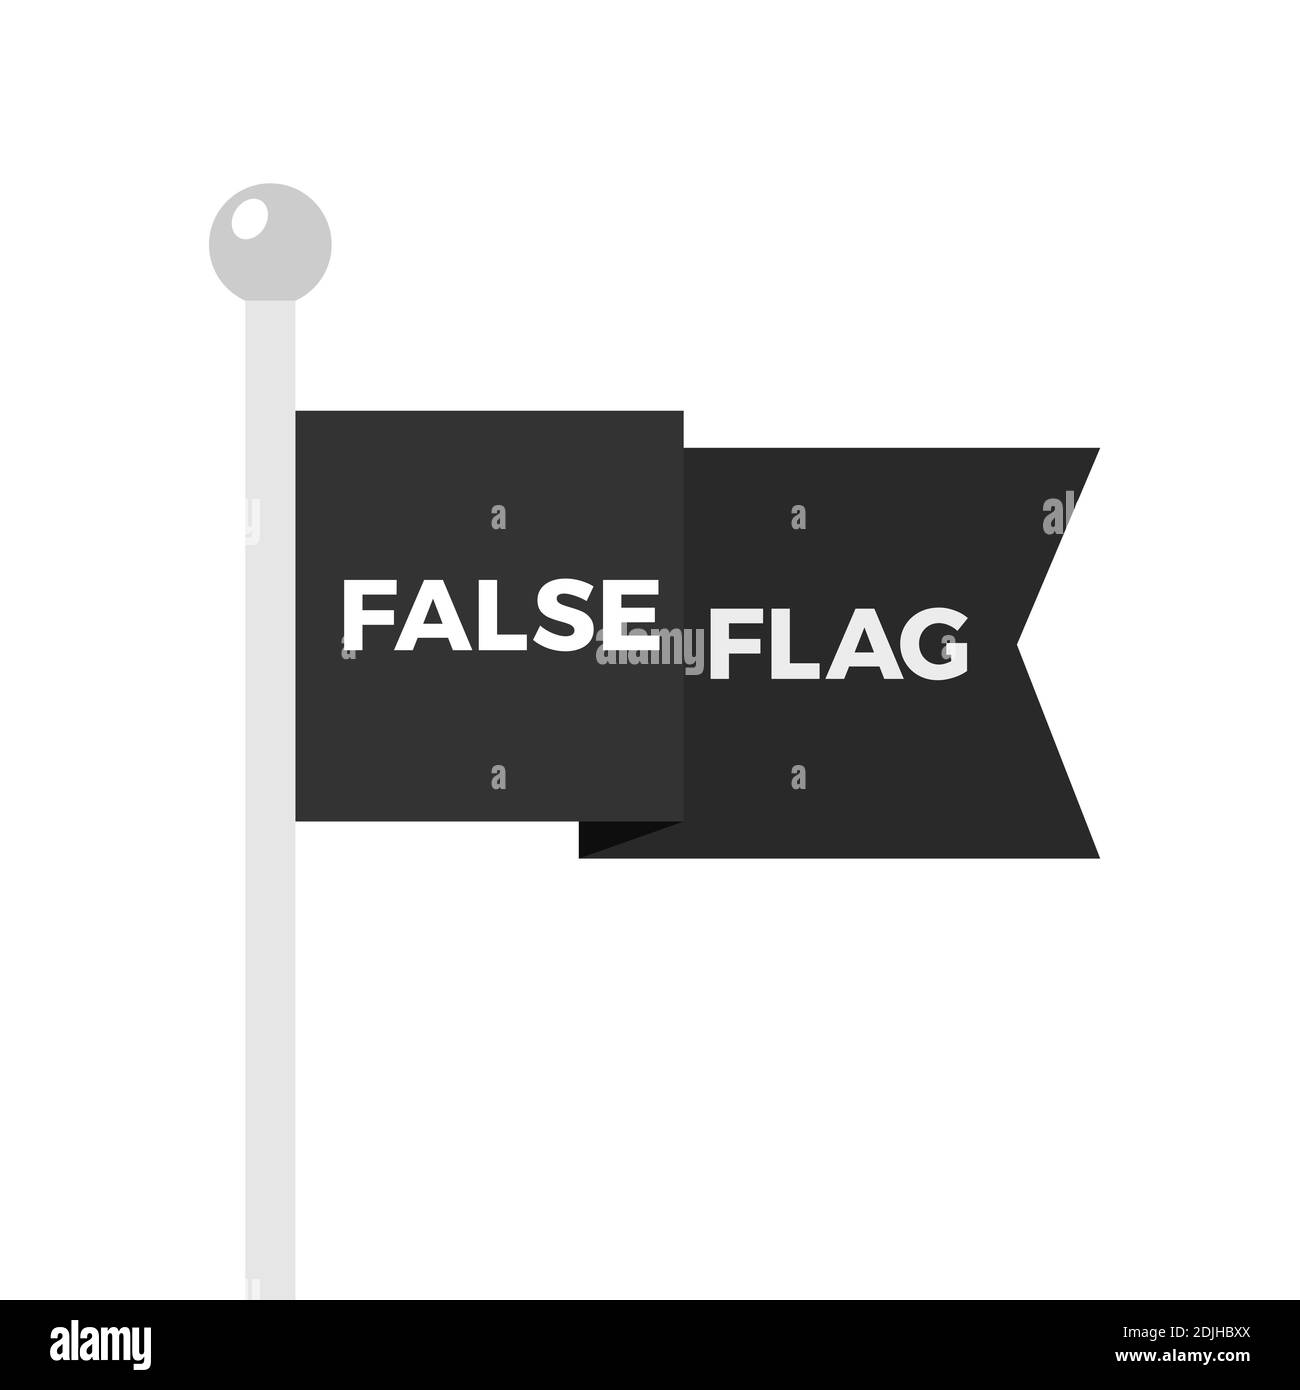 Gewellte Falsche Flagge auf der Stange - verdeckte Identität als Methode der Täuschung und des Betrugs. Manipulative Tarnung. Vektorgrafik Stockfoto